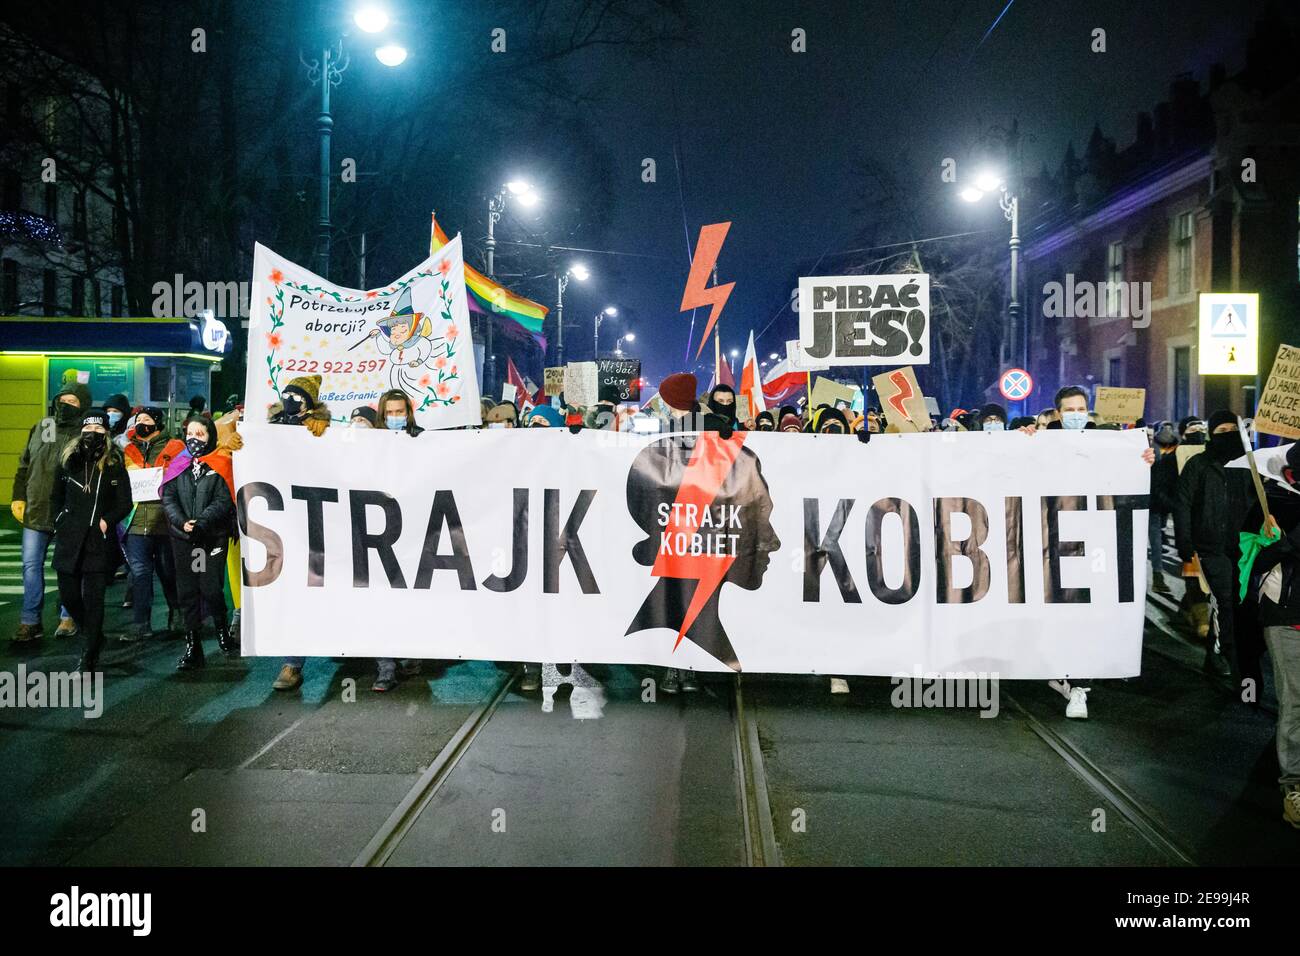 Demonstranten marschierten mit einem riesigen Banner, das ihre Meinung während der Demonstrationen zum Ausdruck brachte.nach dem Urteil des polnischen Verfassungsgerichts, das am 27th. Januar in Kraft trat, um eines der restriktivsten Abtreibungsgesetze in Europa umzusetzen, gingen Hunderte von Polen in allen größeren Städten auf die Straße. Die Proteste wurden vom Frauenstreik organisiert. Stockfoto